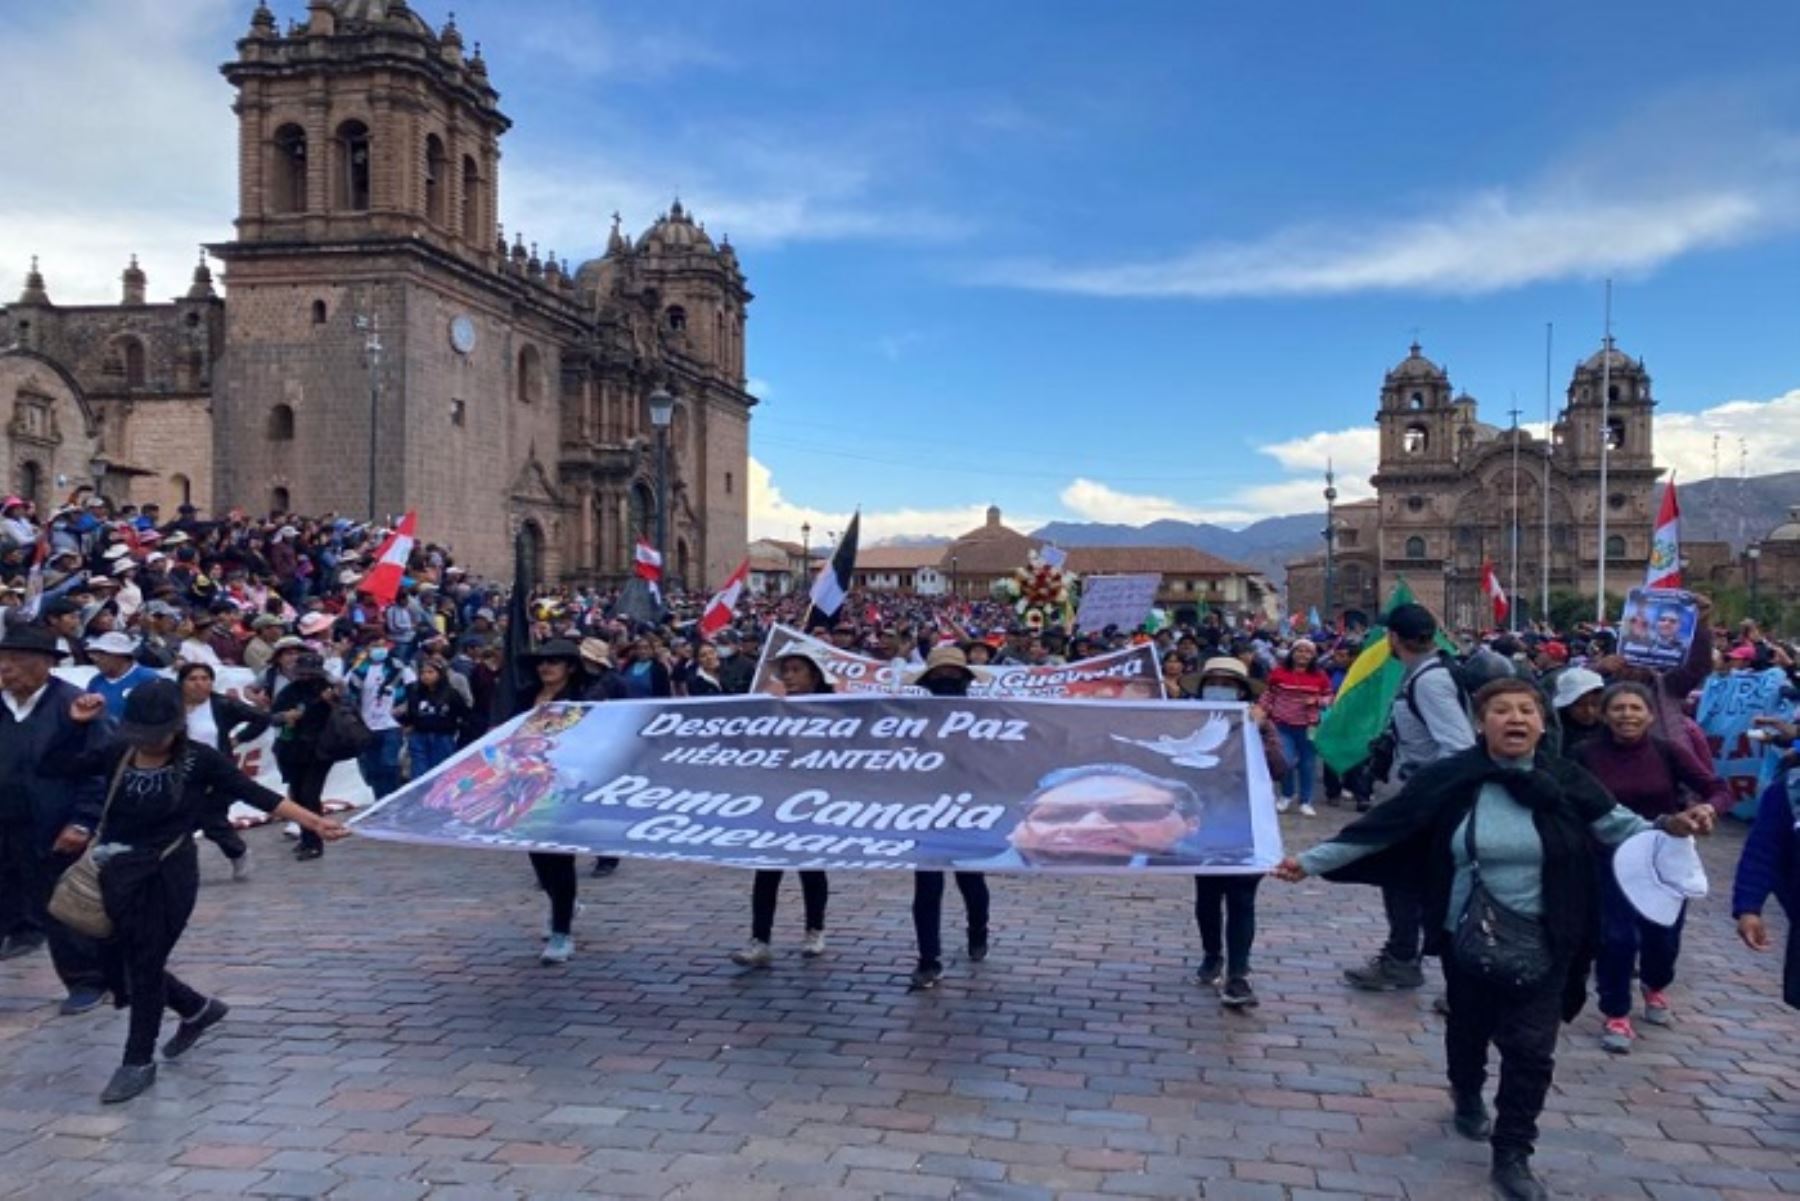 Las protestas que se desarrollan en Cusco han afectado gravemente al turismo de esa región, la principal fuente de ingresos de gran parte de la población. Foto: ANDINA/difusión.